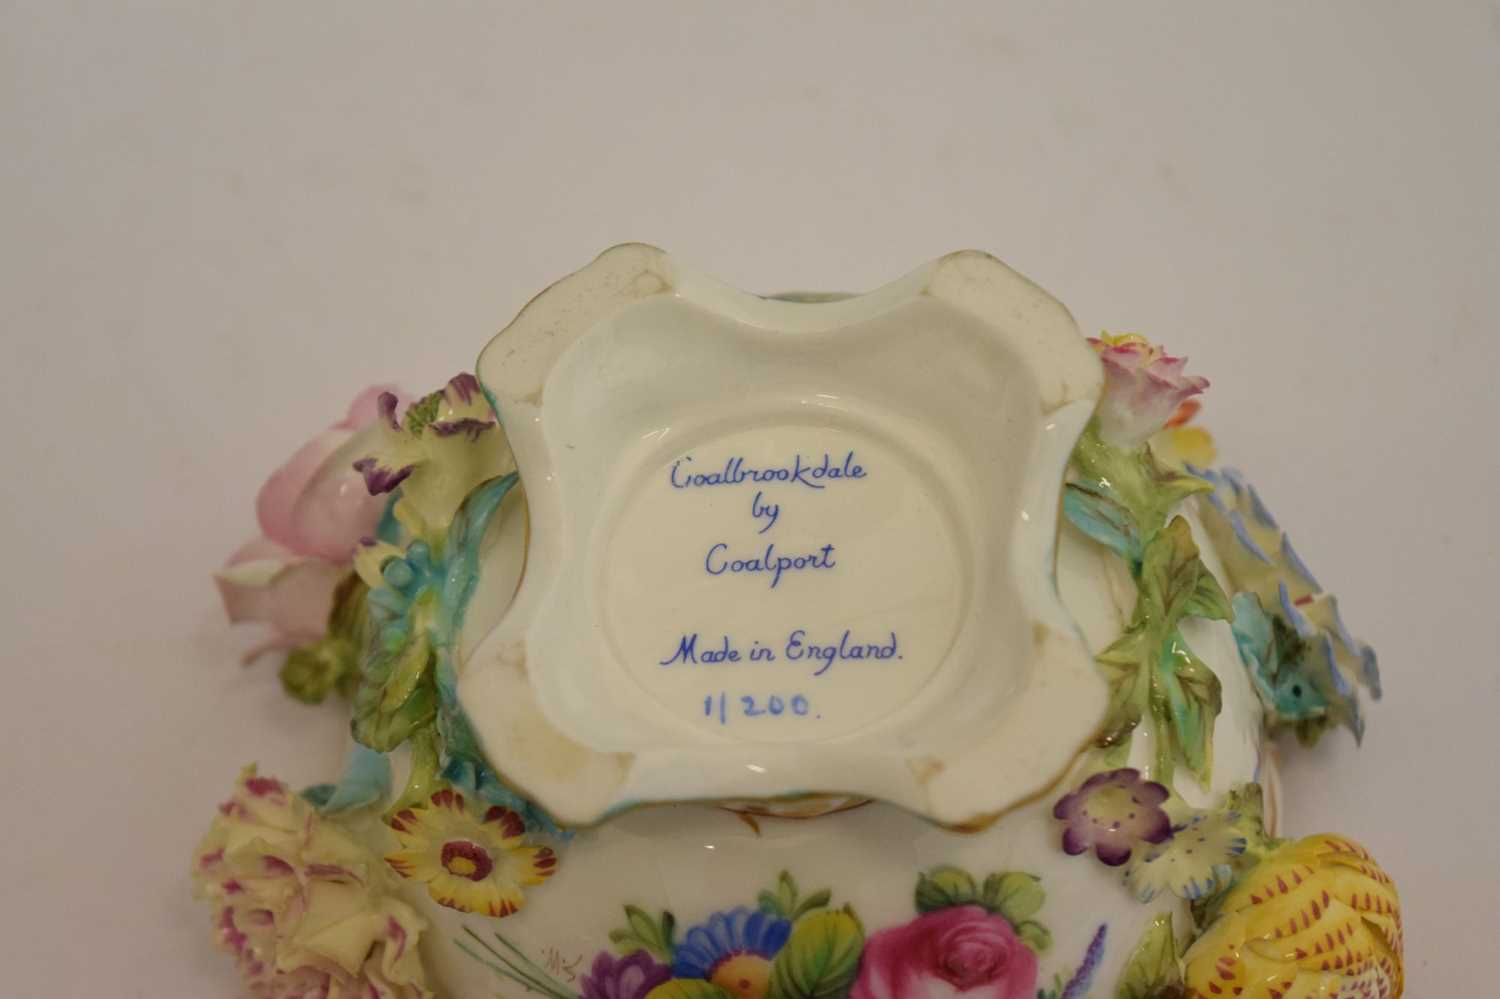 Coalbrookdale by Coalport floral encrusted porcelain lidded pot - Image 6 of 7